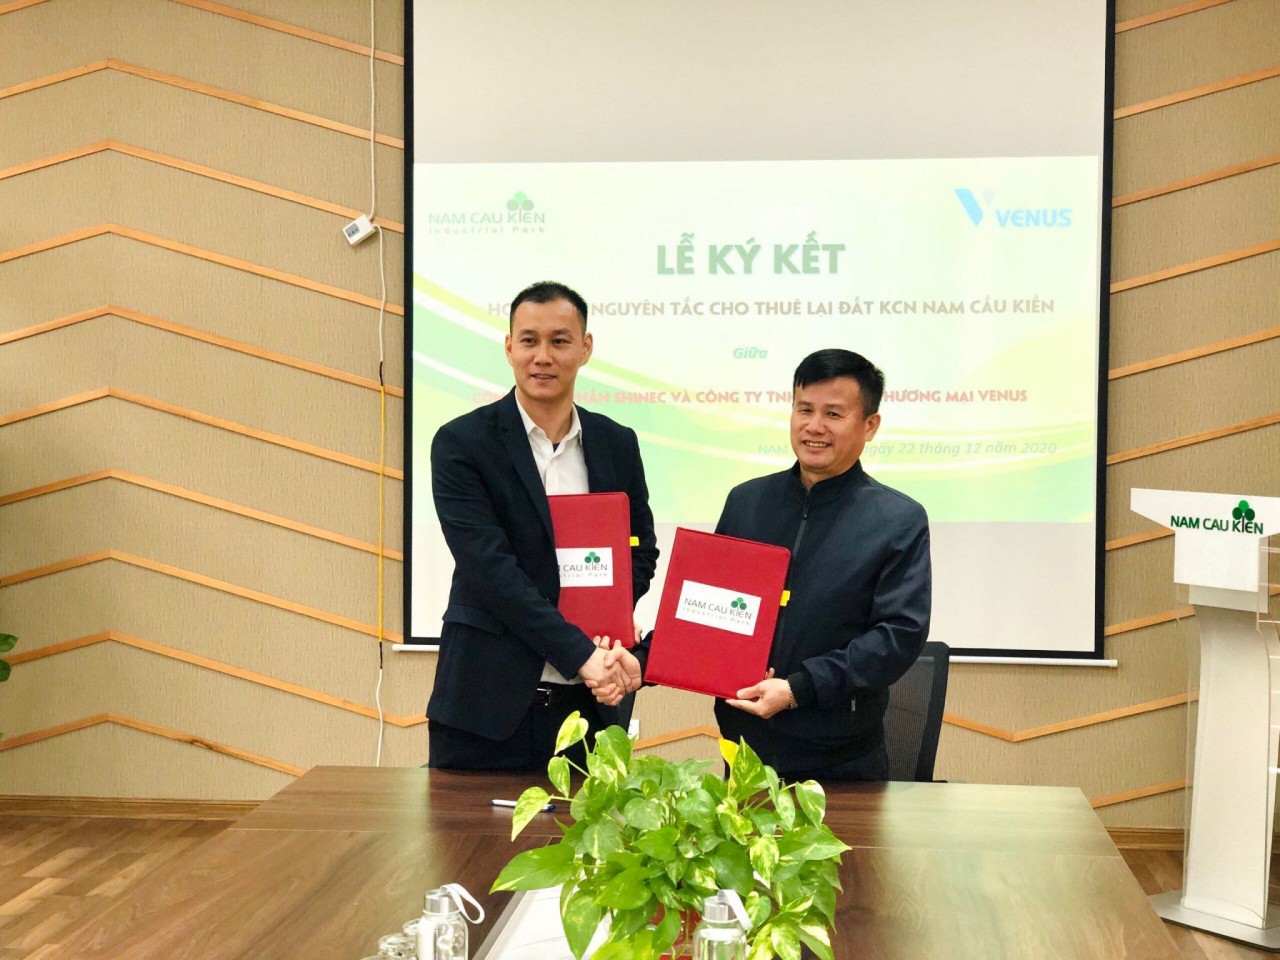 Bất chấp sự ảnh hưởng của dịch Covid-19, doanh nhân Lê Minh Khoa đã xúc tiến việc ký kết thuê quyền sử dụng đất để triển khai xây dựng nhà máy tại Khu công nghiệp Nam Cầu Kiền, Hải Phòng.